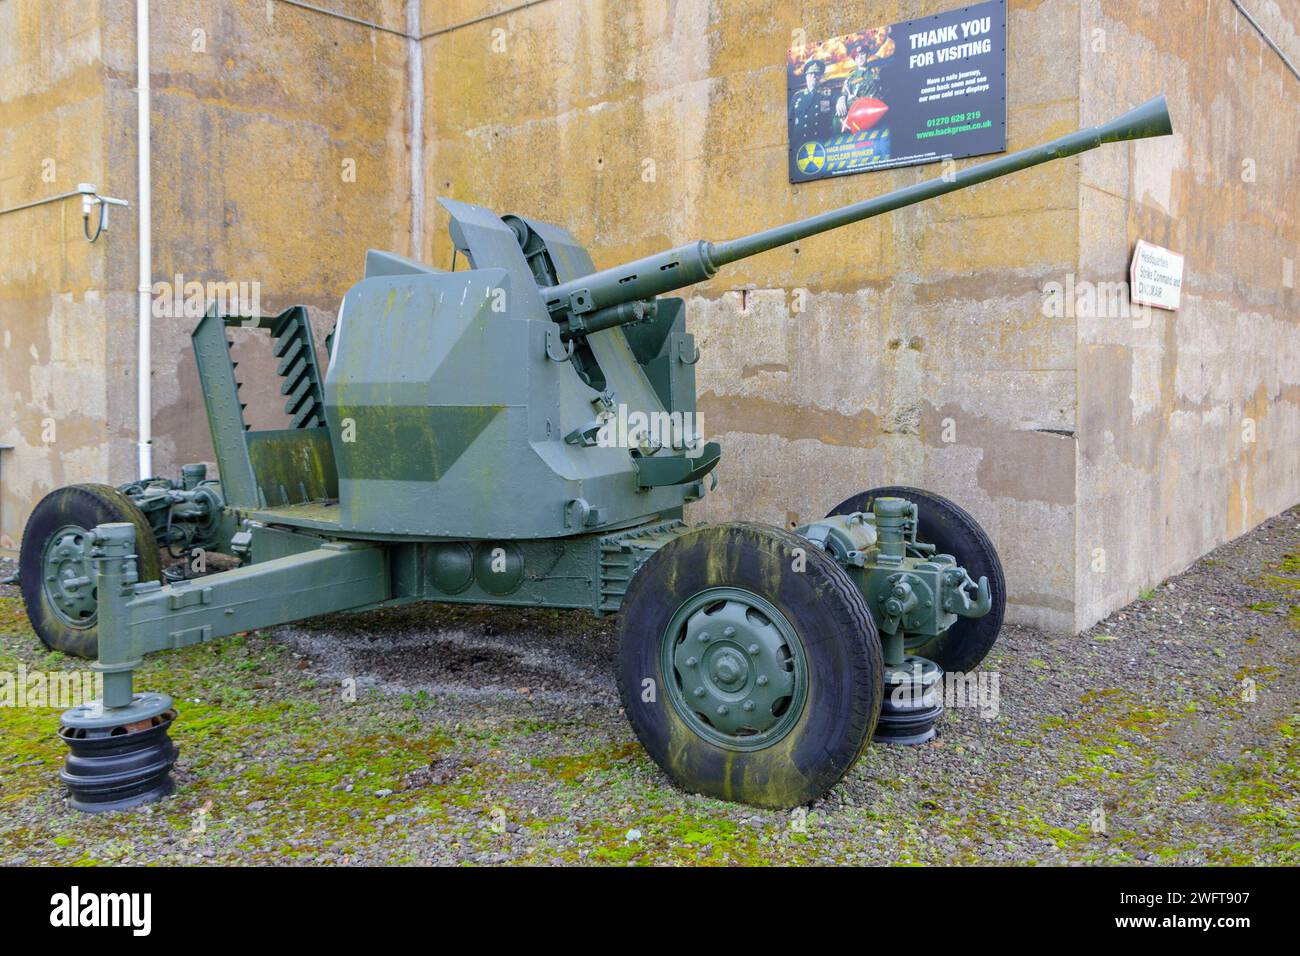 Bofors 40-mm-Kanone bei MOD Hack Green Secret Bunker cheshire, im Kalten Krieg als nukleare Sprengunterkunft benutzt, Kommandoposten jetzt ein Museum Stockfoto